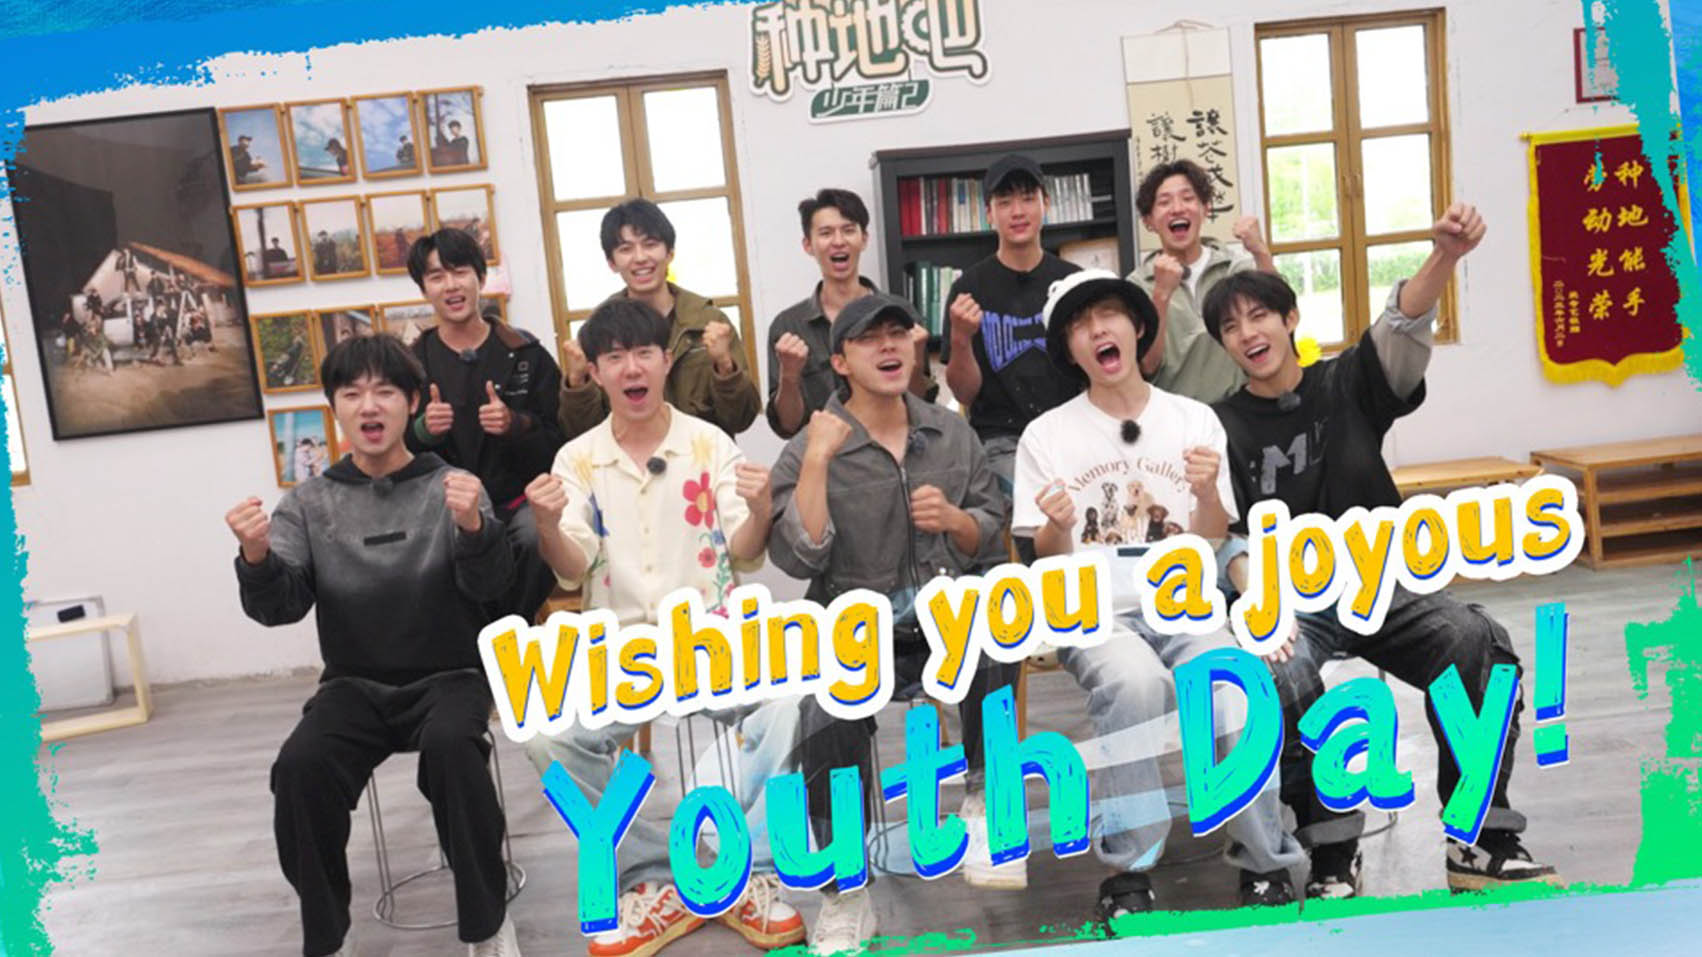 Wishing you a joyous Youth Day!